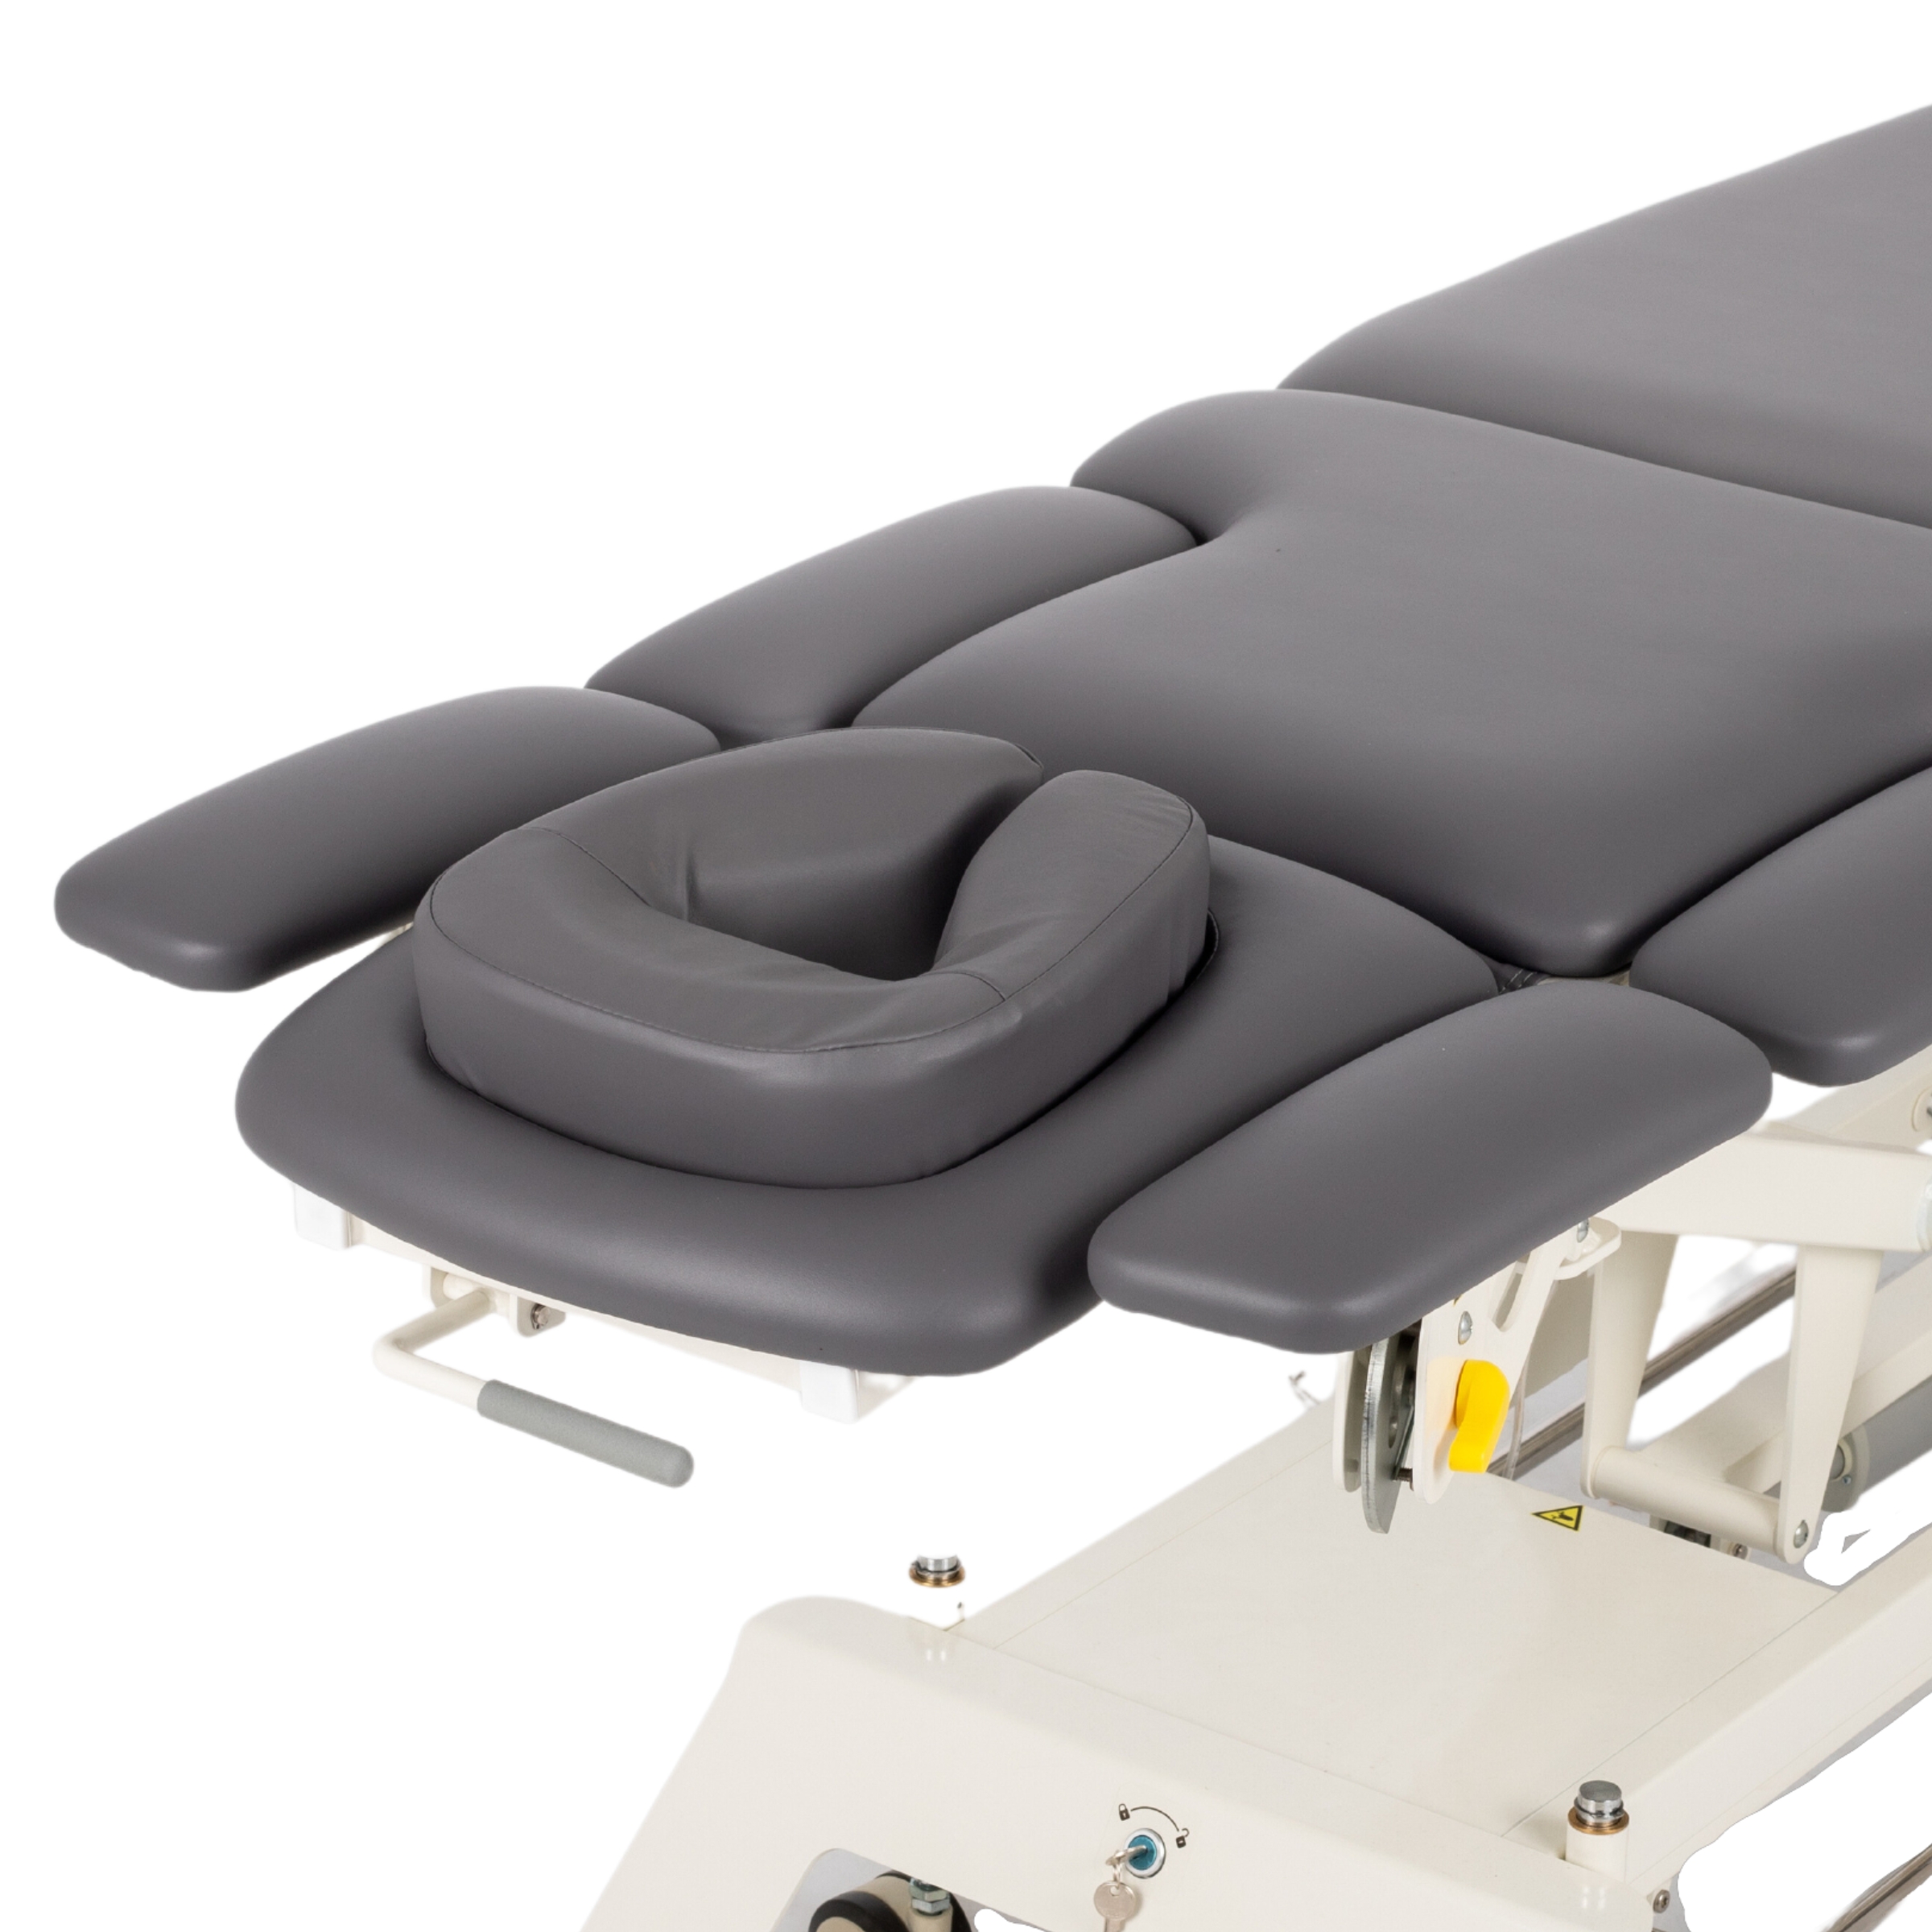 Najbardziej zaawansowany, 7-segmentowy stół rehabilitacyjny wyposażony w ramę sterującą, system jezdny oraz podgłówek z poduszką ERGO. Dedykowany do masaży, fizjoterapii, rehabilitacji.